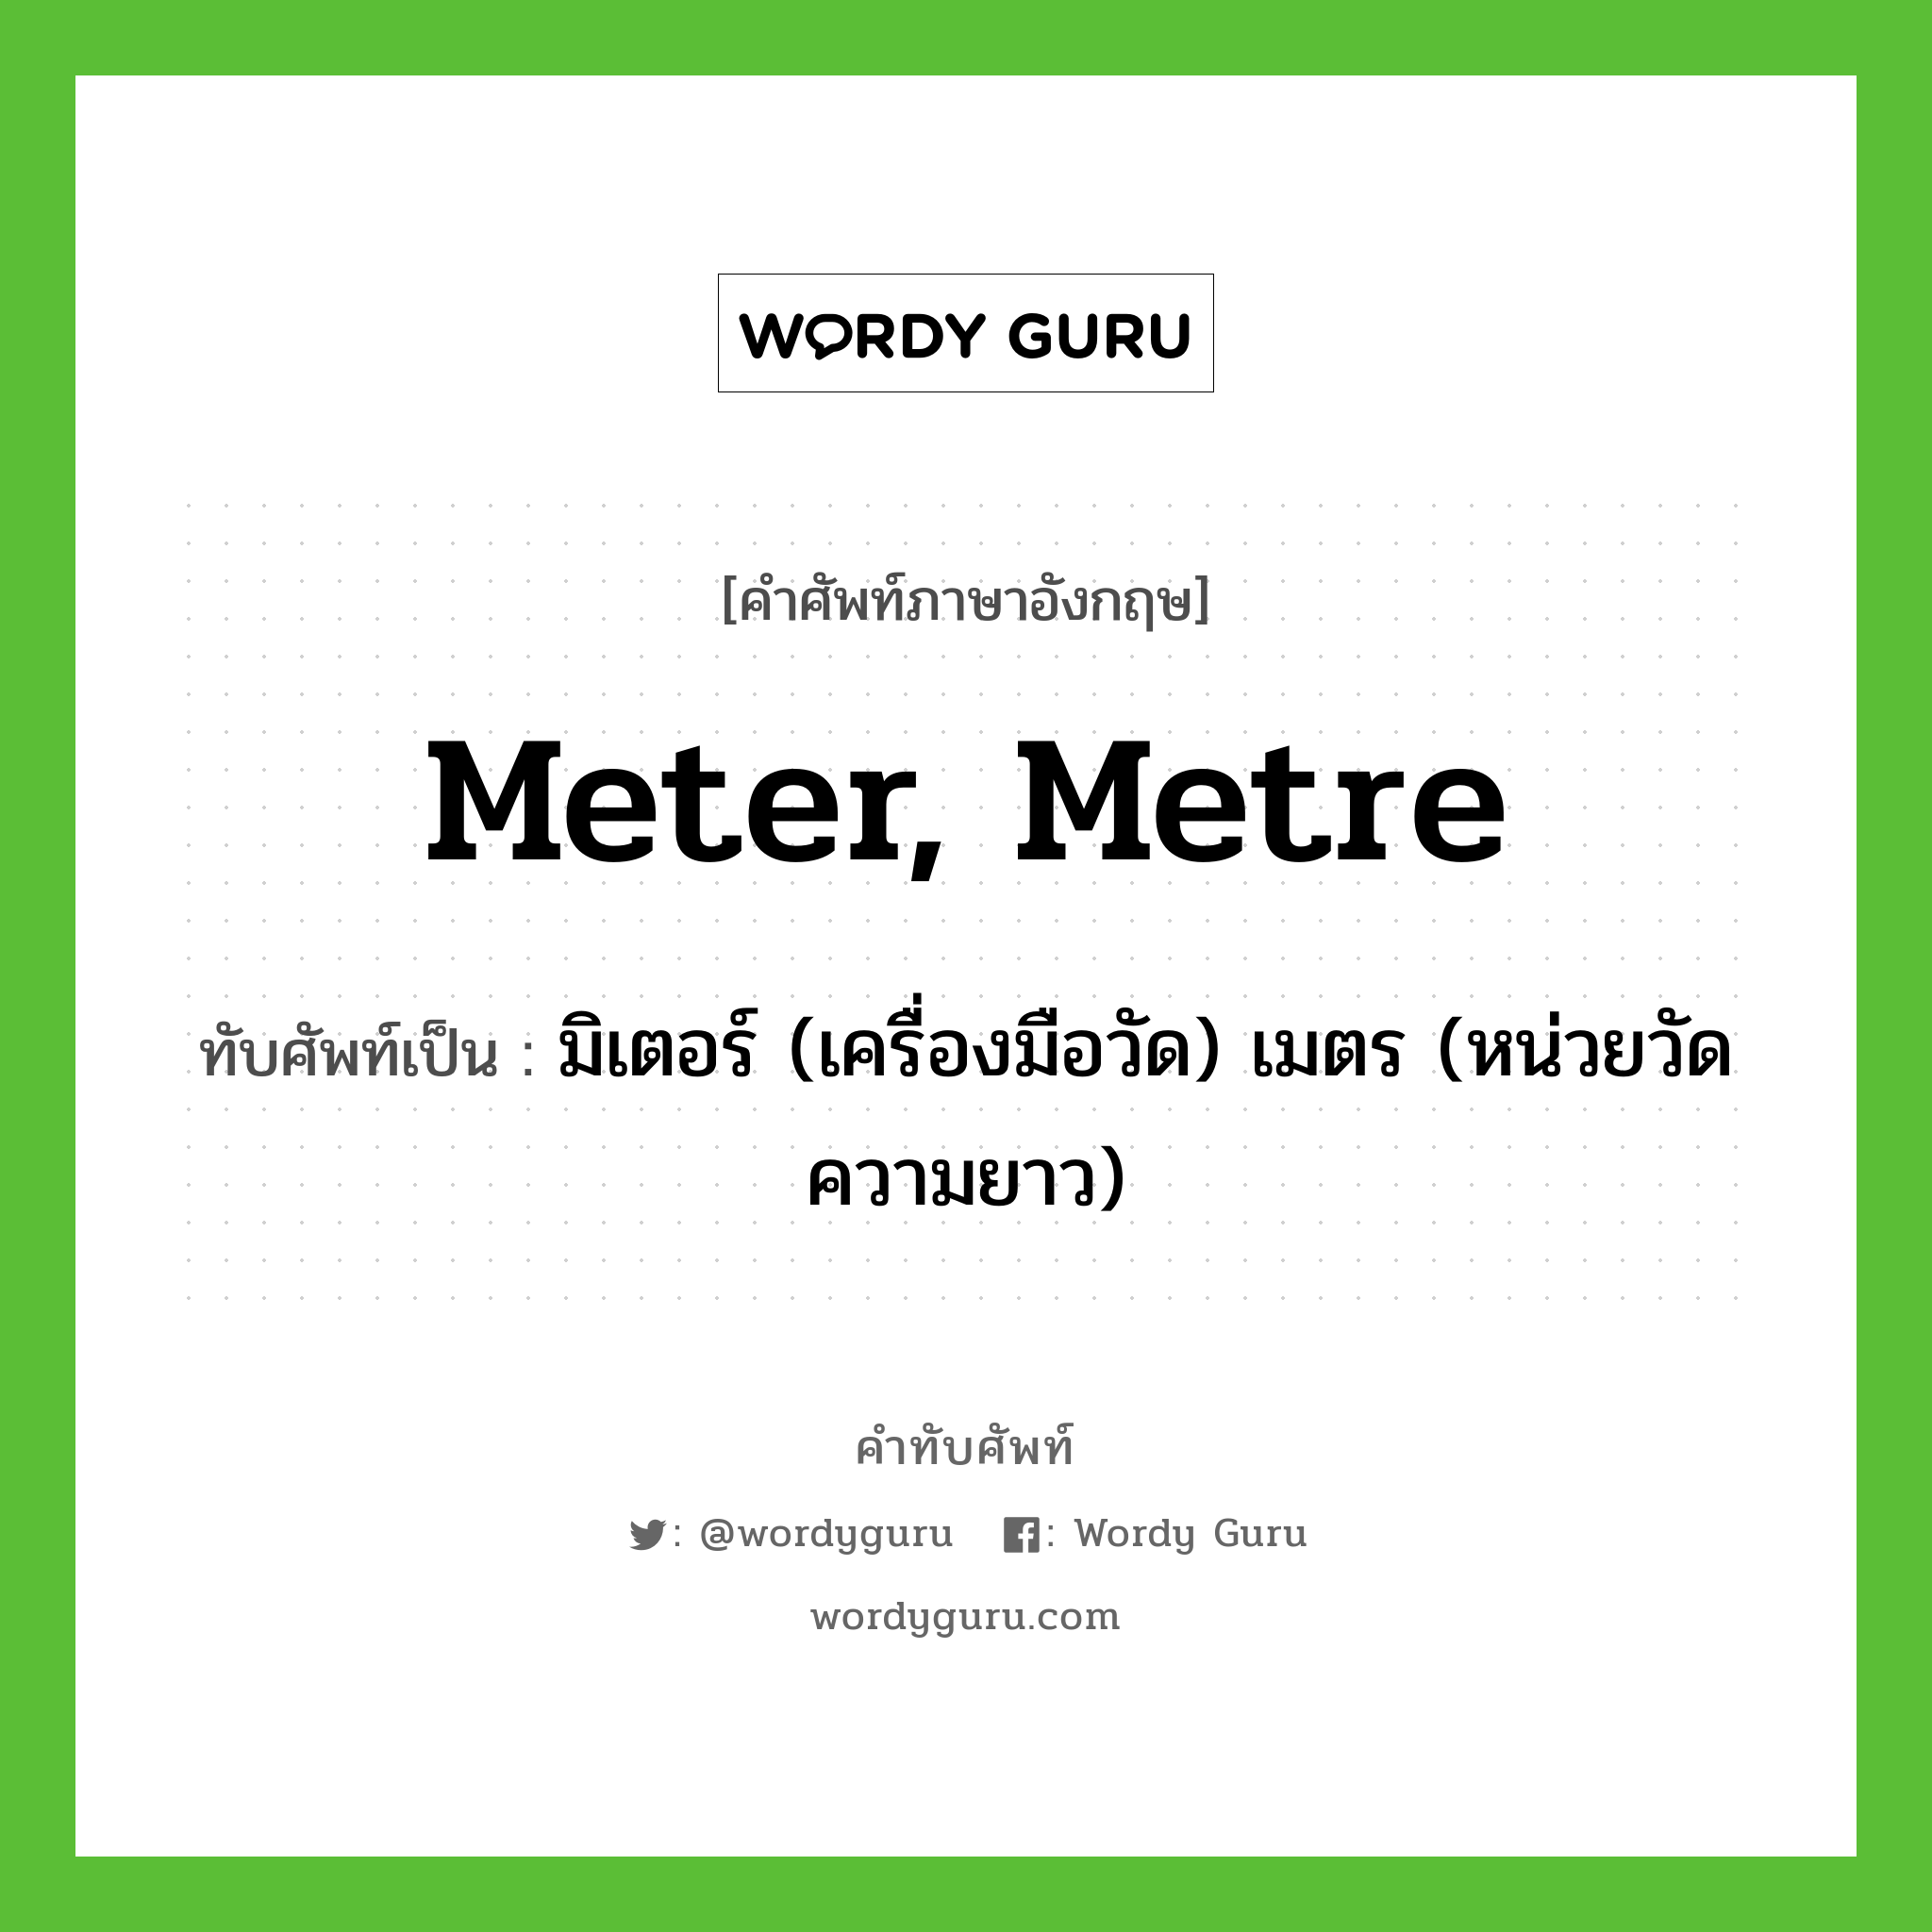 มิเตอร์ (เครื่องมือวัด) เมตร (หน่วยวัดความยาว) เขียนอย่างไร?, คำศัพท์ภาษาอังกฤษ มิเตอร์ (เครื่องมือวัด) เมตร (หน่วยวัดความยาว) ทับศัพท์เป็น meter, metre